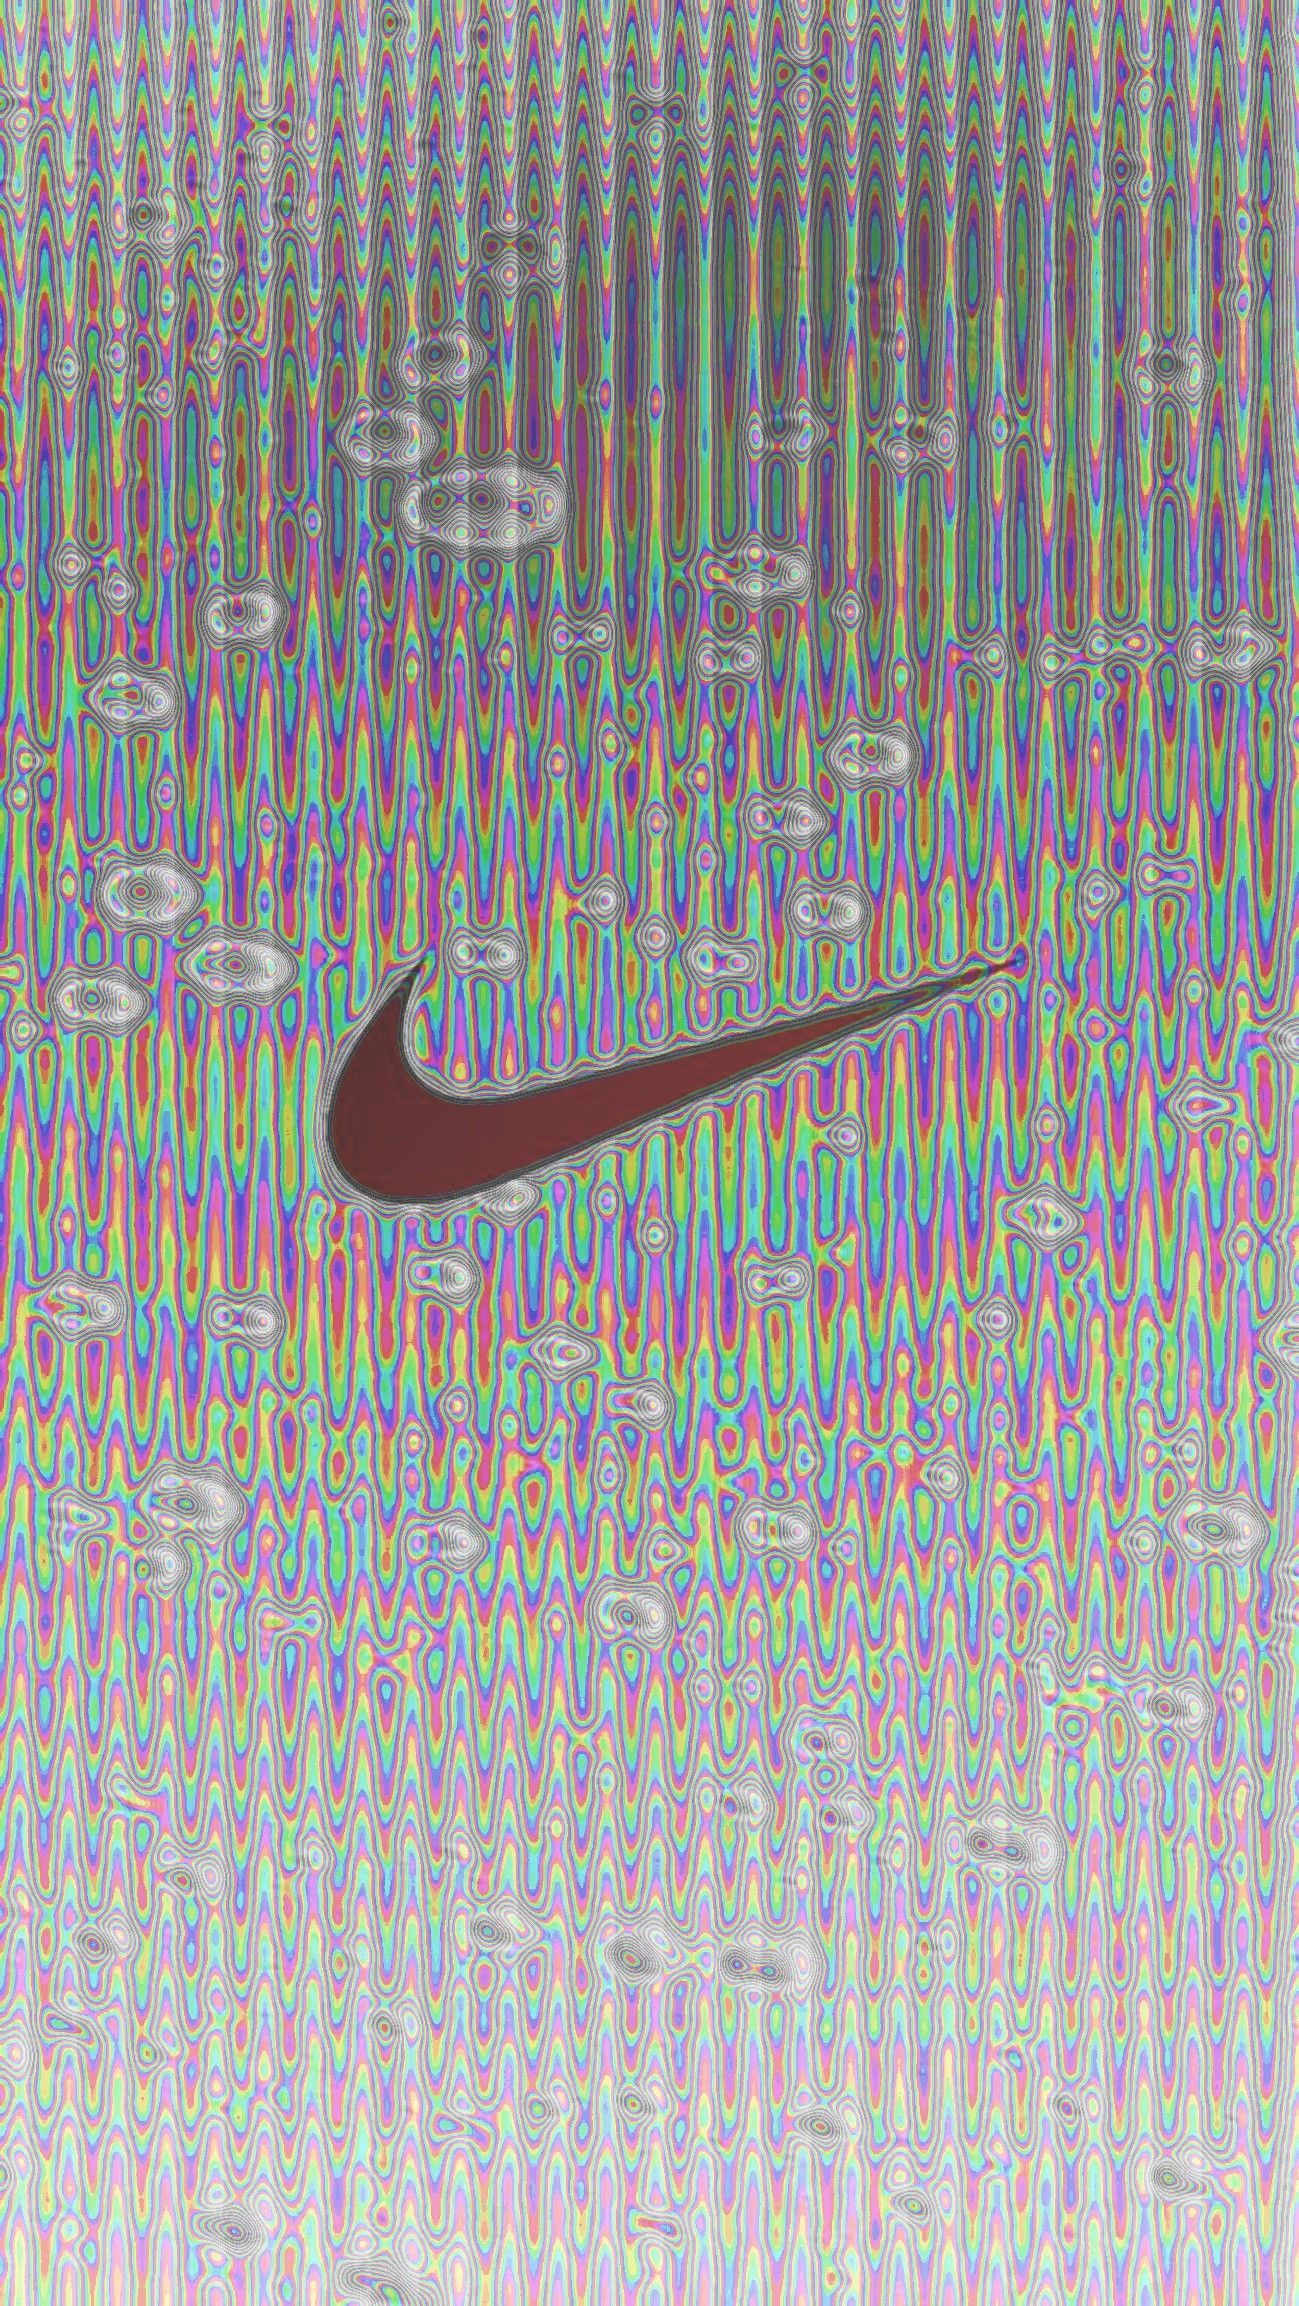 Nike wallpaper. Nike wallpaper, Nike, Wallpaper